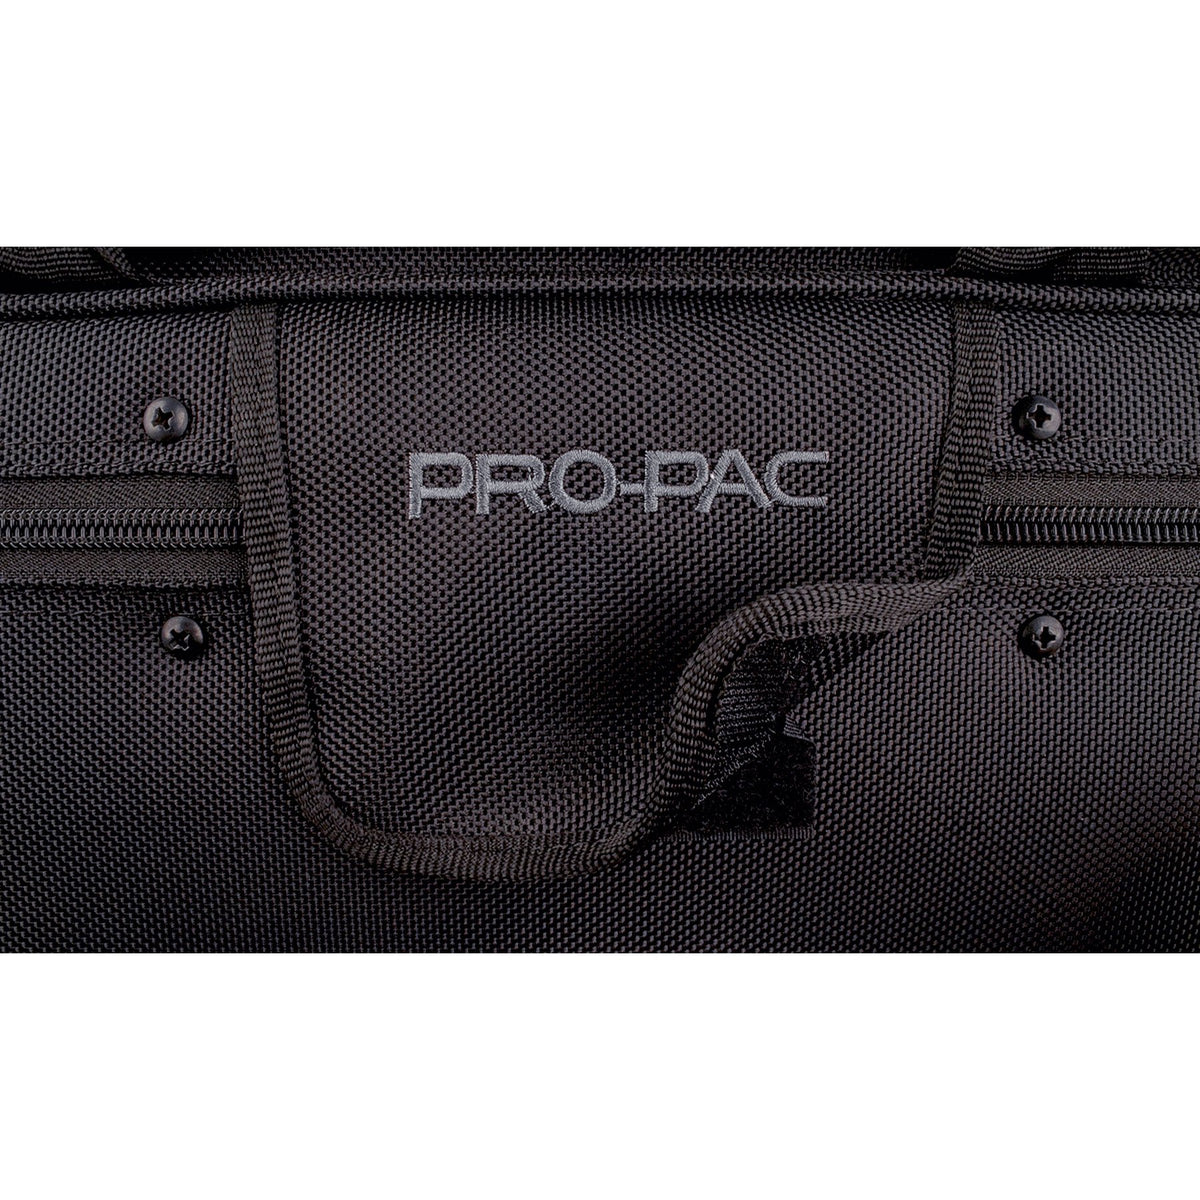 Protec - Trumpet PRO PAC Case (Travel Light)-Case-Protec-Music Elements